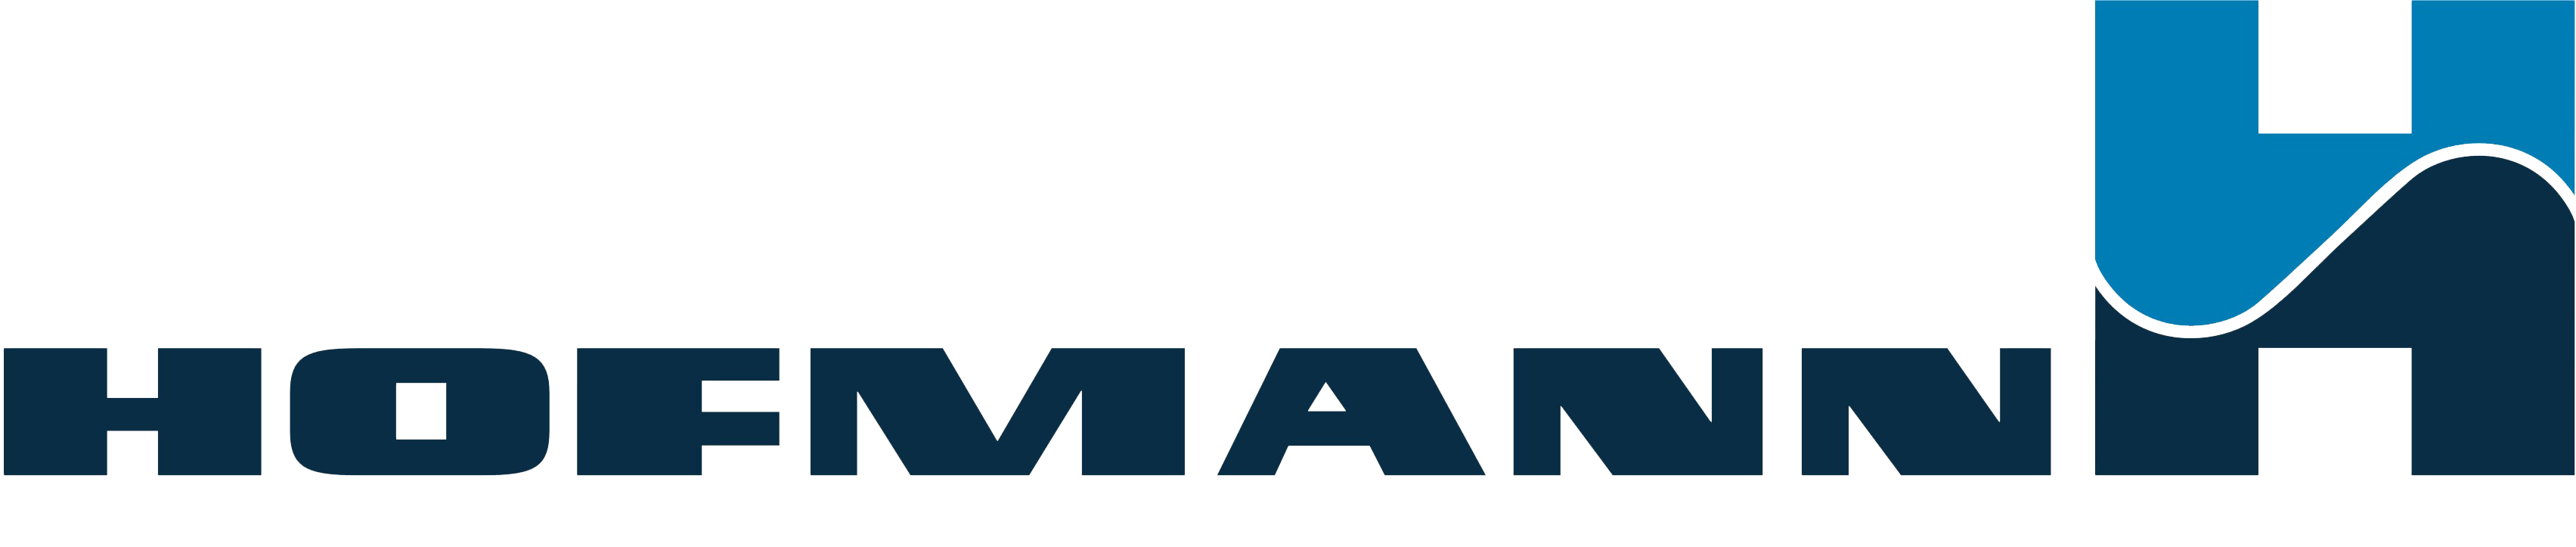 Hofmann Machinen und Anlagenbau - logo.png